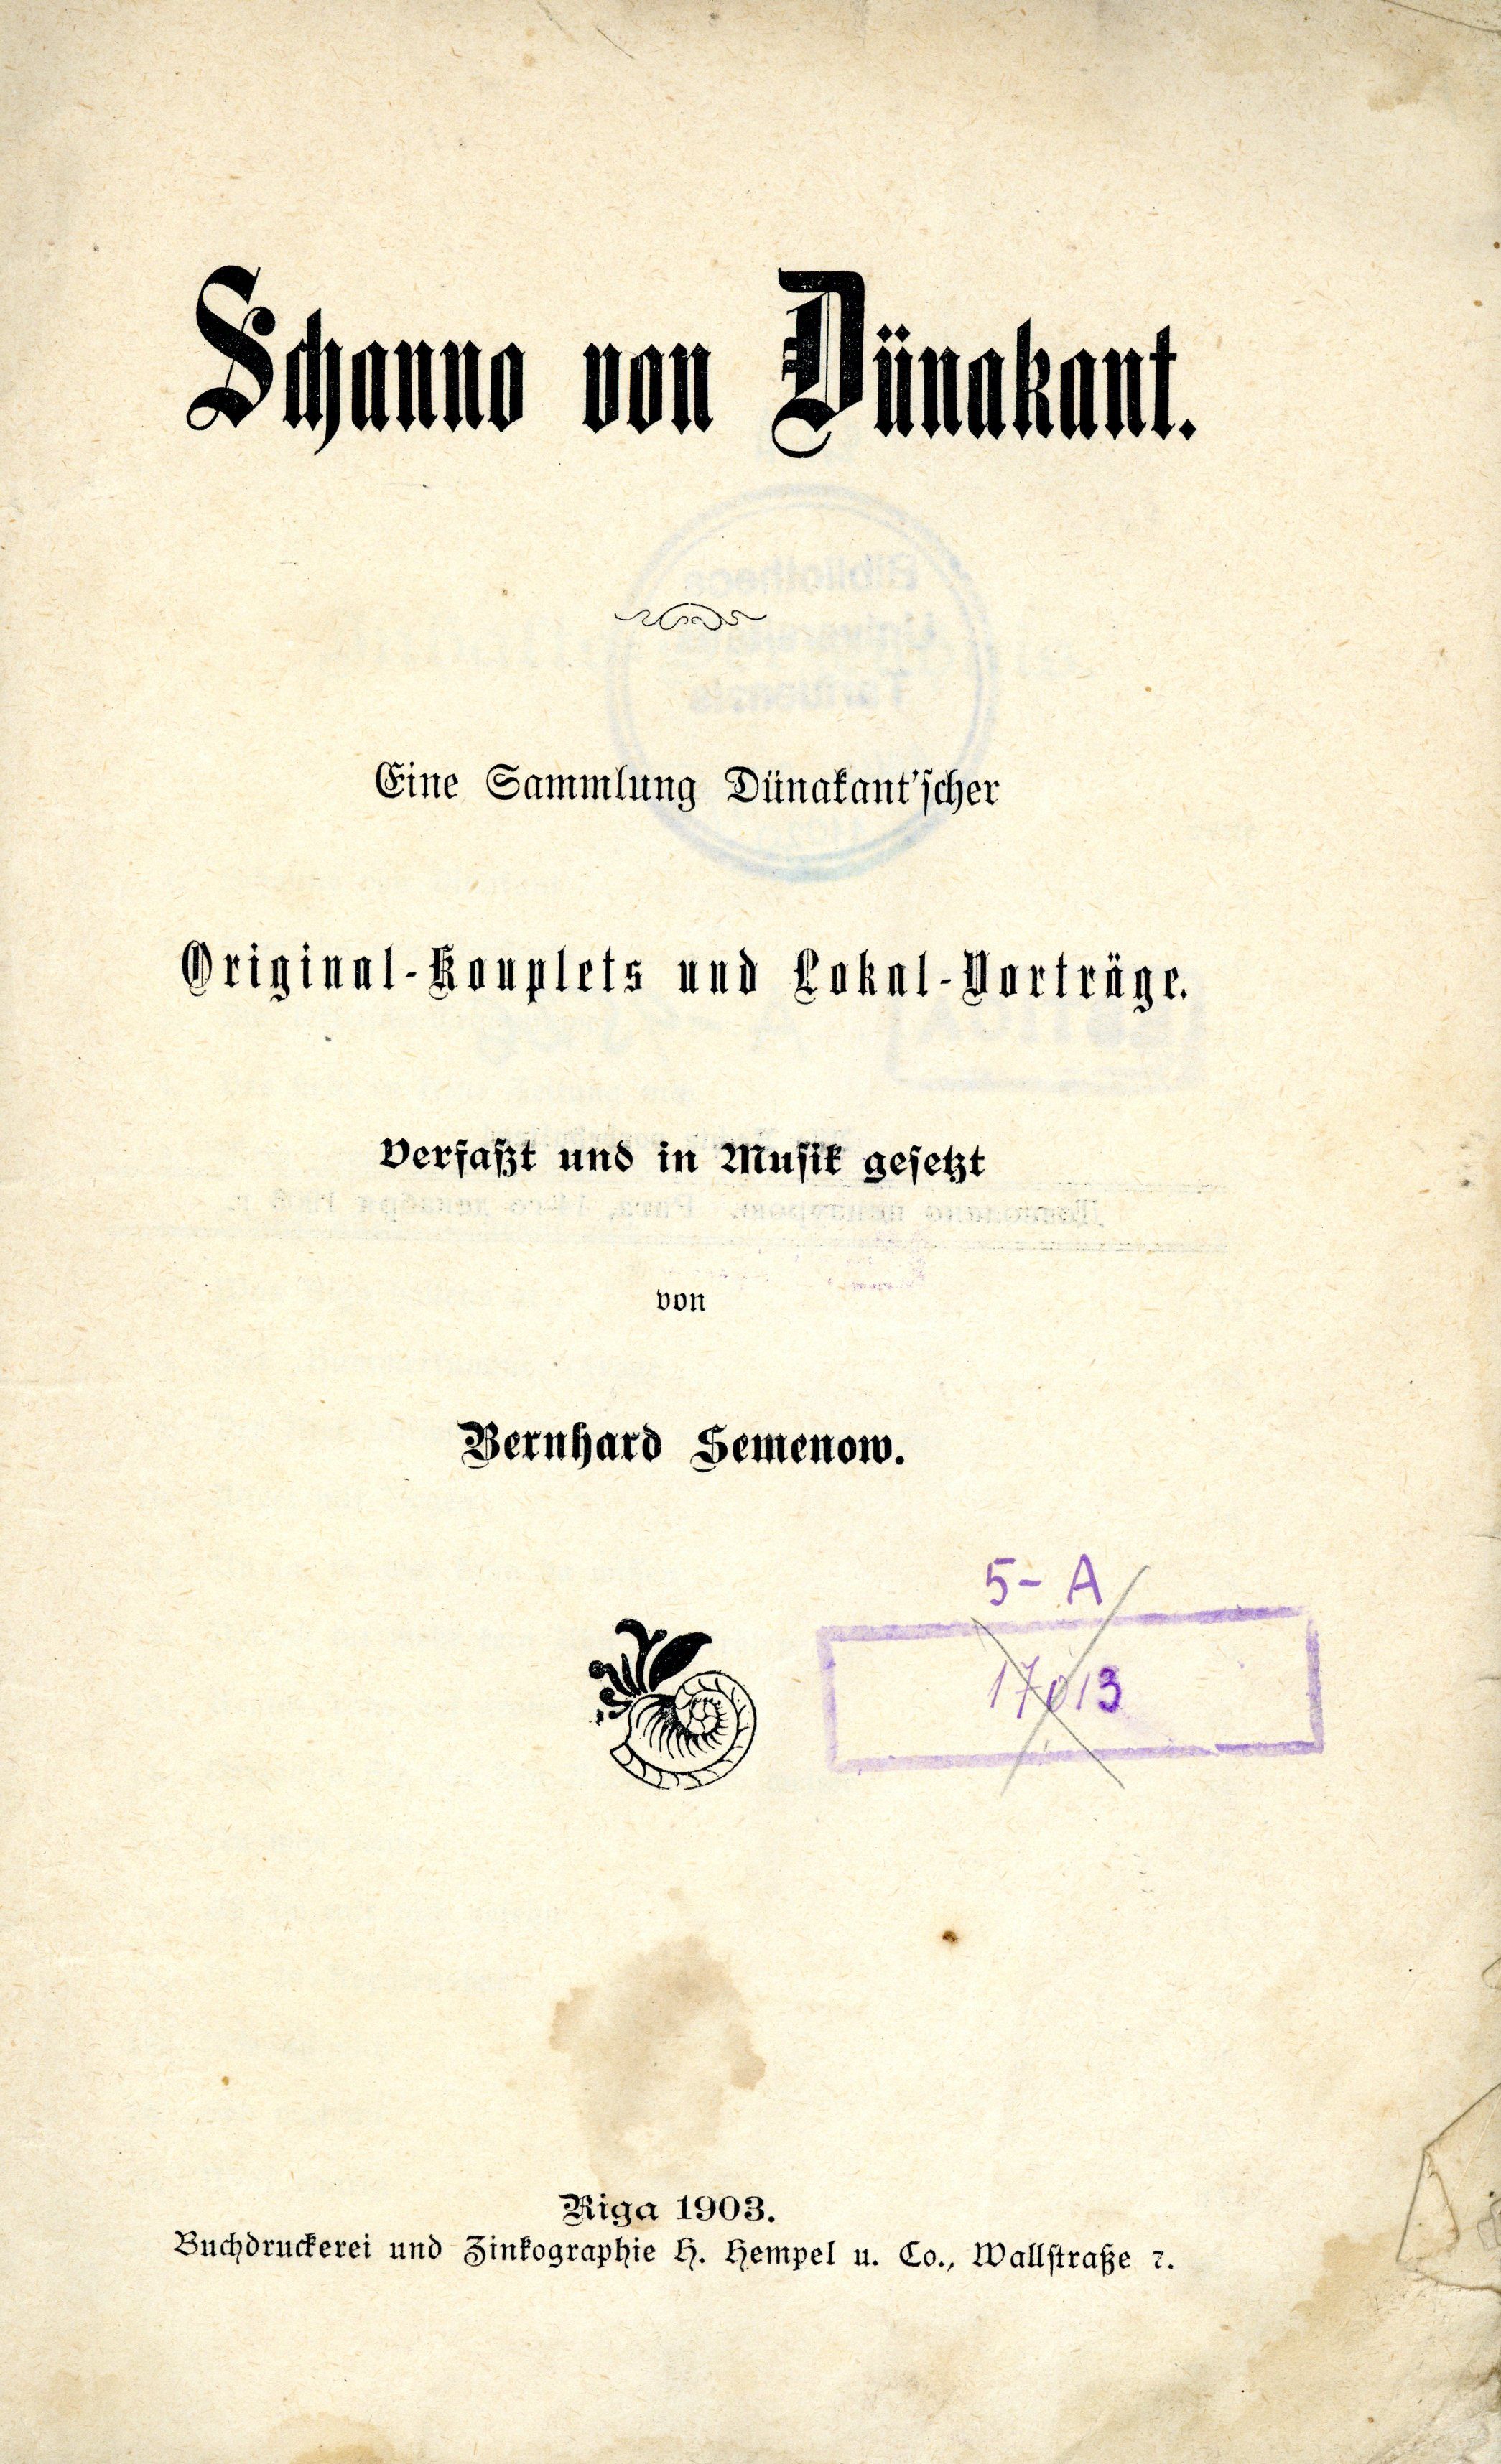 Schanno von Dünakant (1903) | 2. Title page